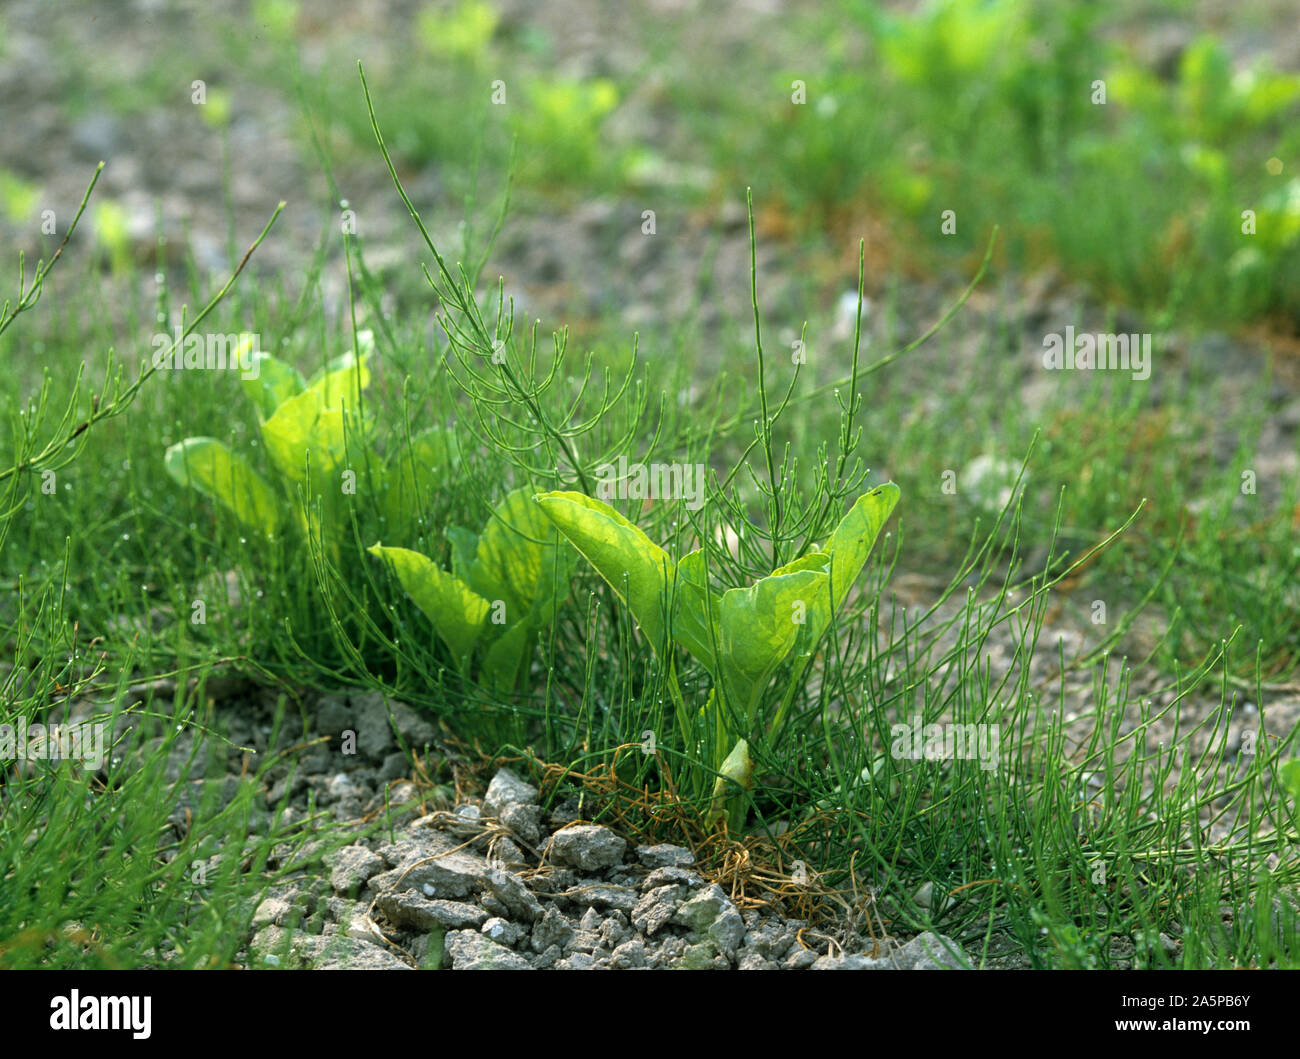 Common Equiseto o cola de caballo (Equisetum arvense) plantas jóvenes en un cultivo de remolacha azucarera, Francia Foto de stock